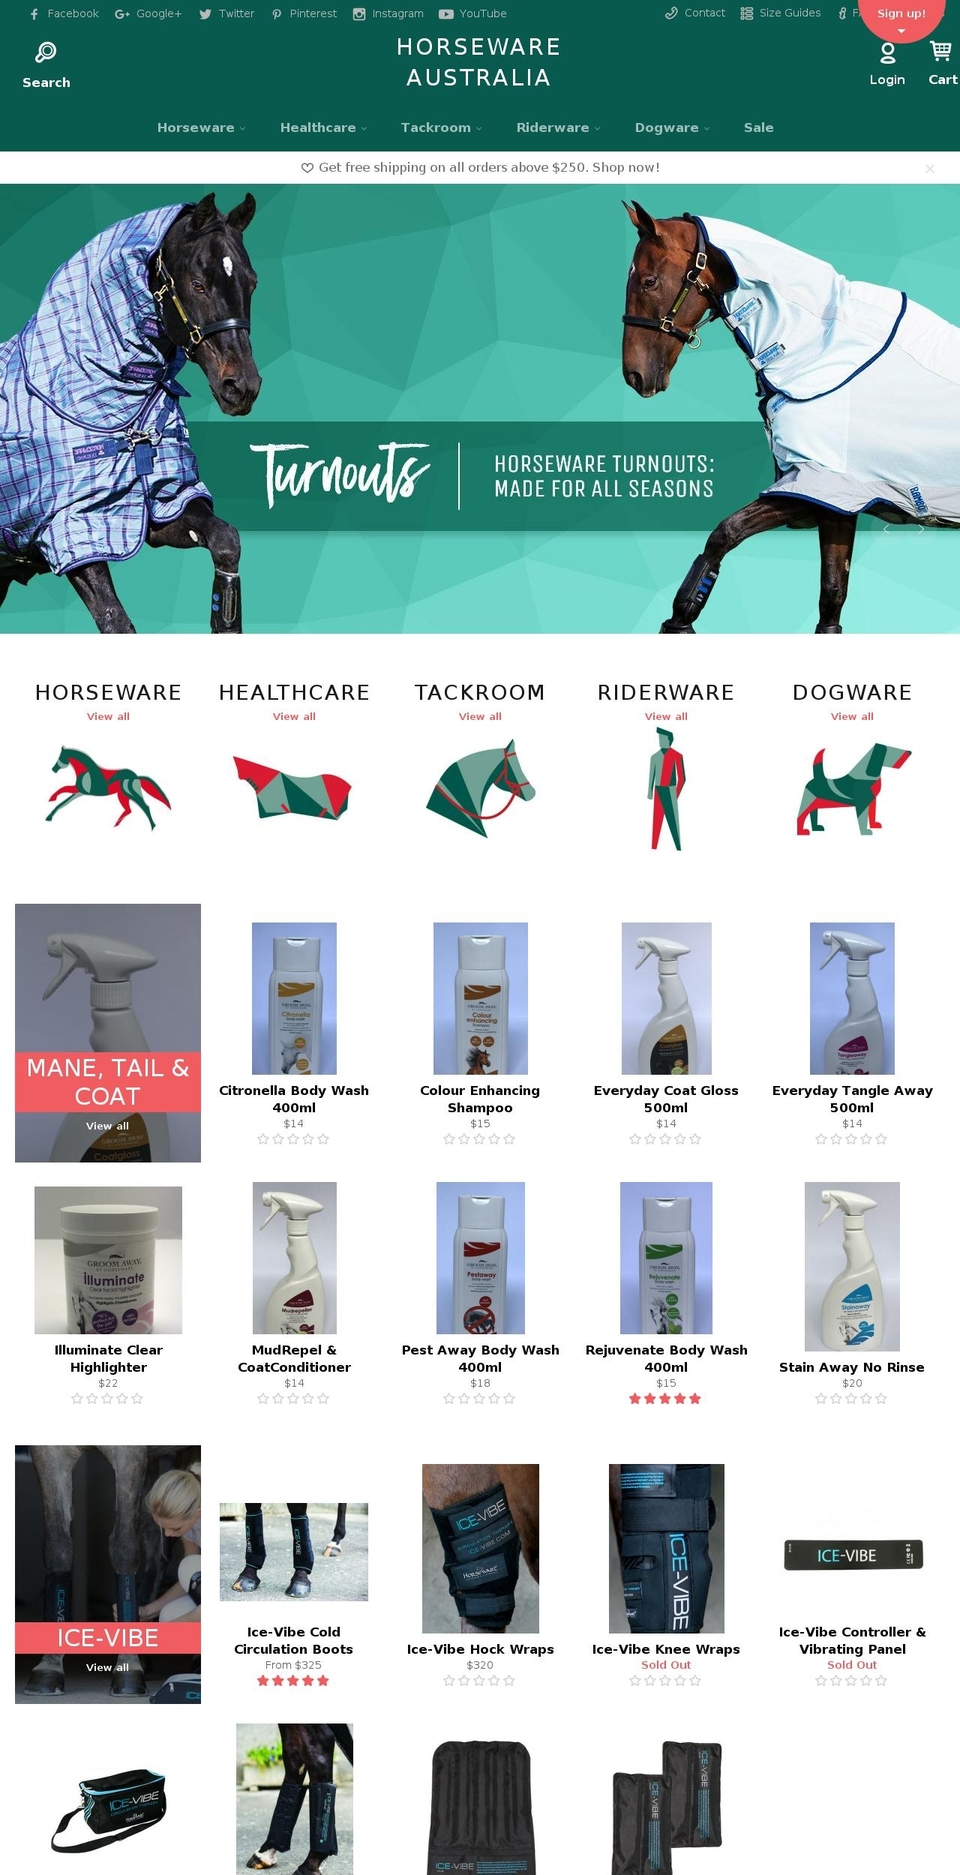 horseware.com.au shopify website screenshot